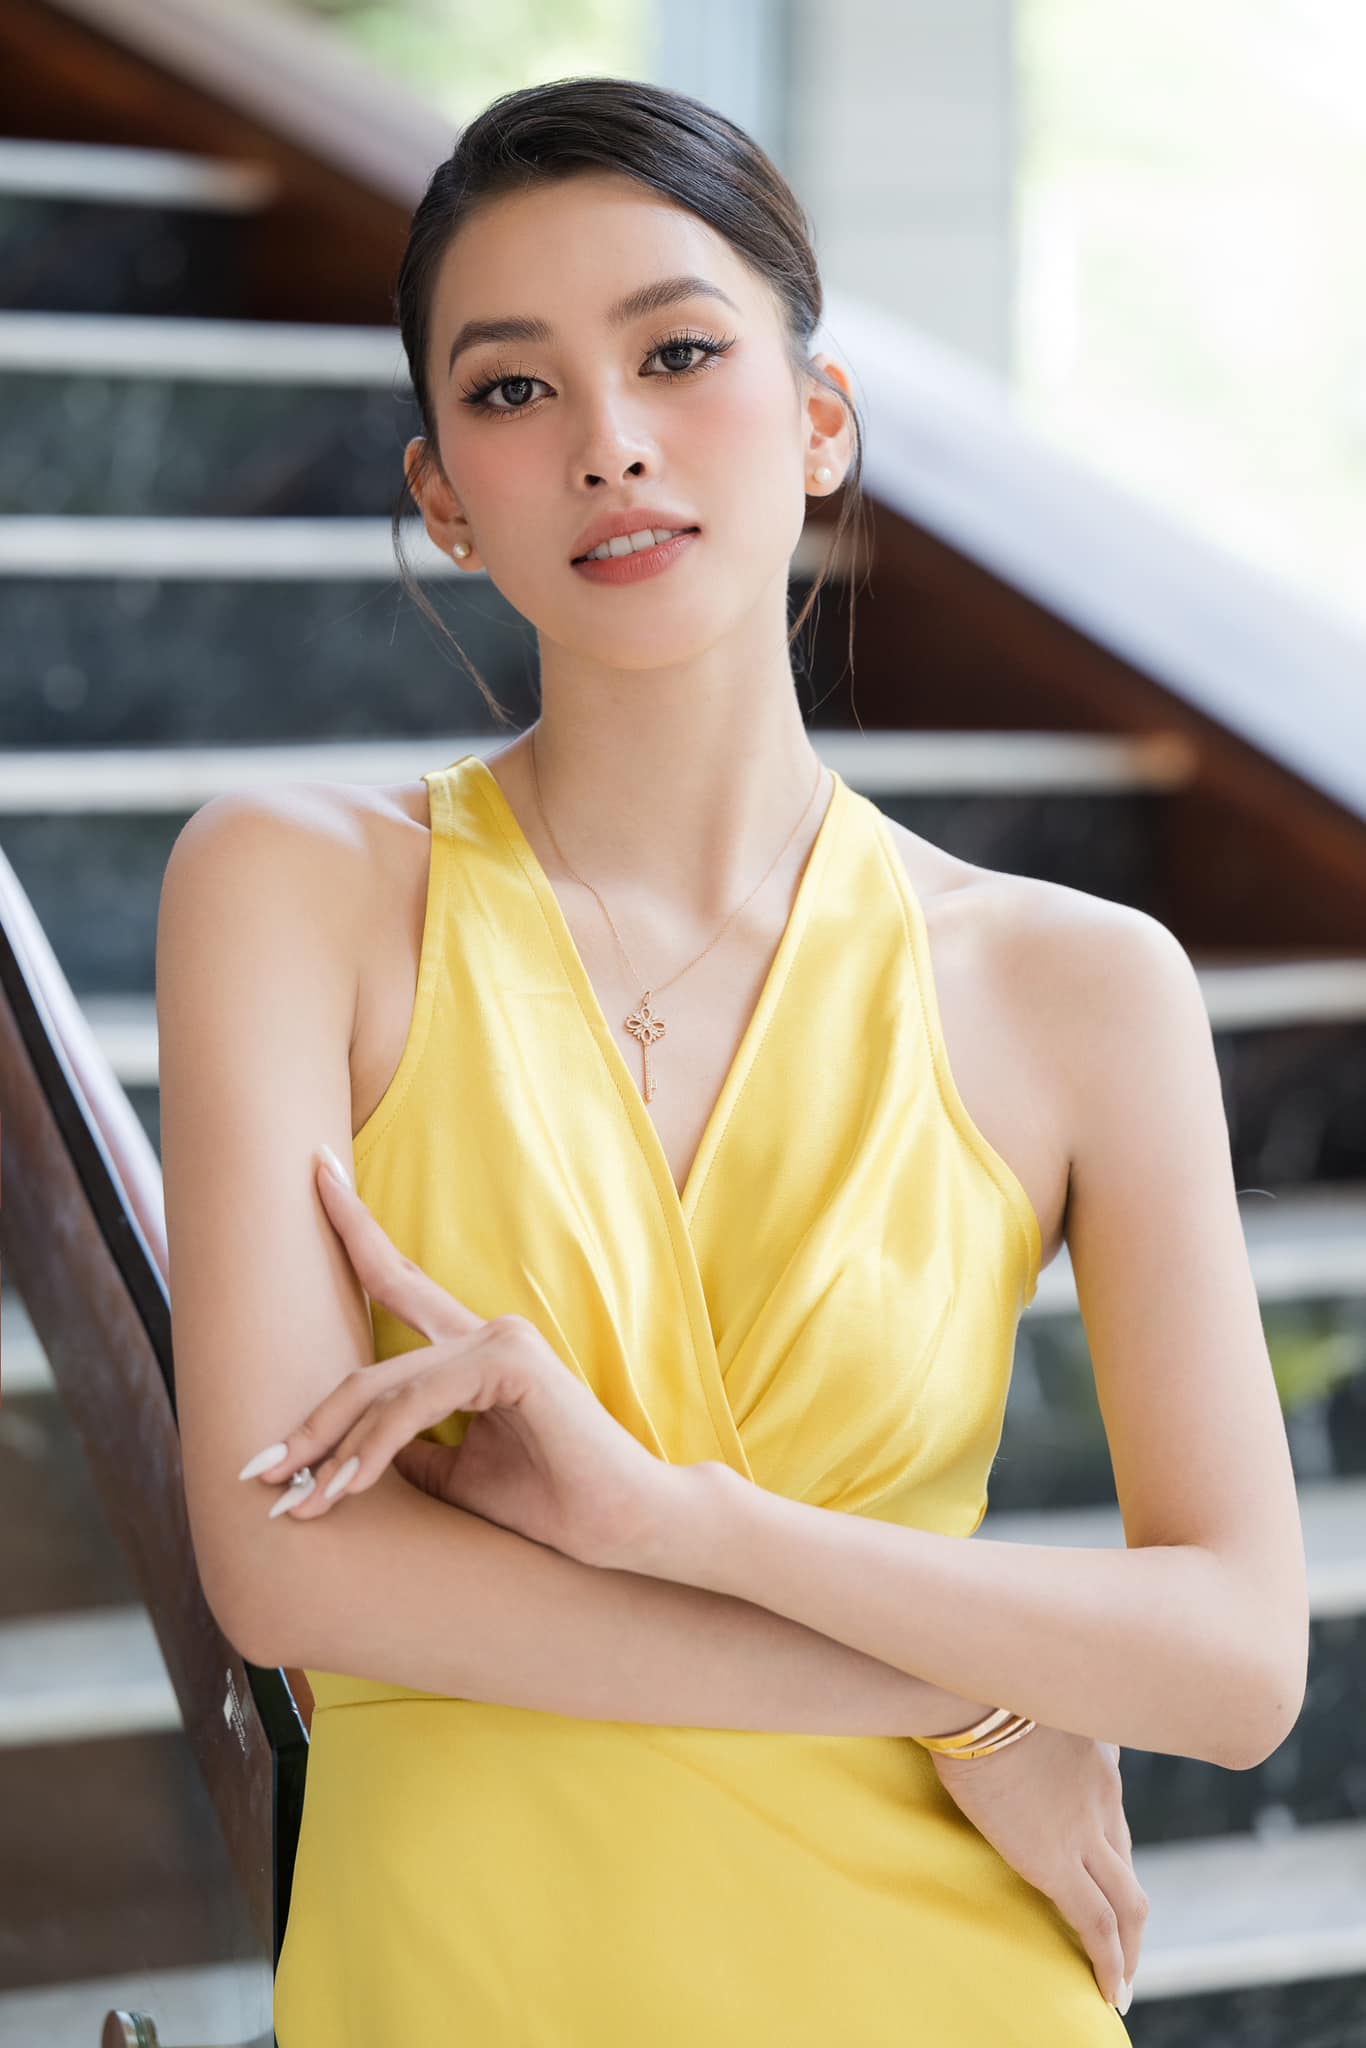 Lộ bằng chứng không thể chối cãi chuyện Hoa hậu Trần Tiểu Vy hẹn hò với tài tử Thái Lan - Ảnh 5.